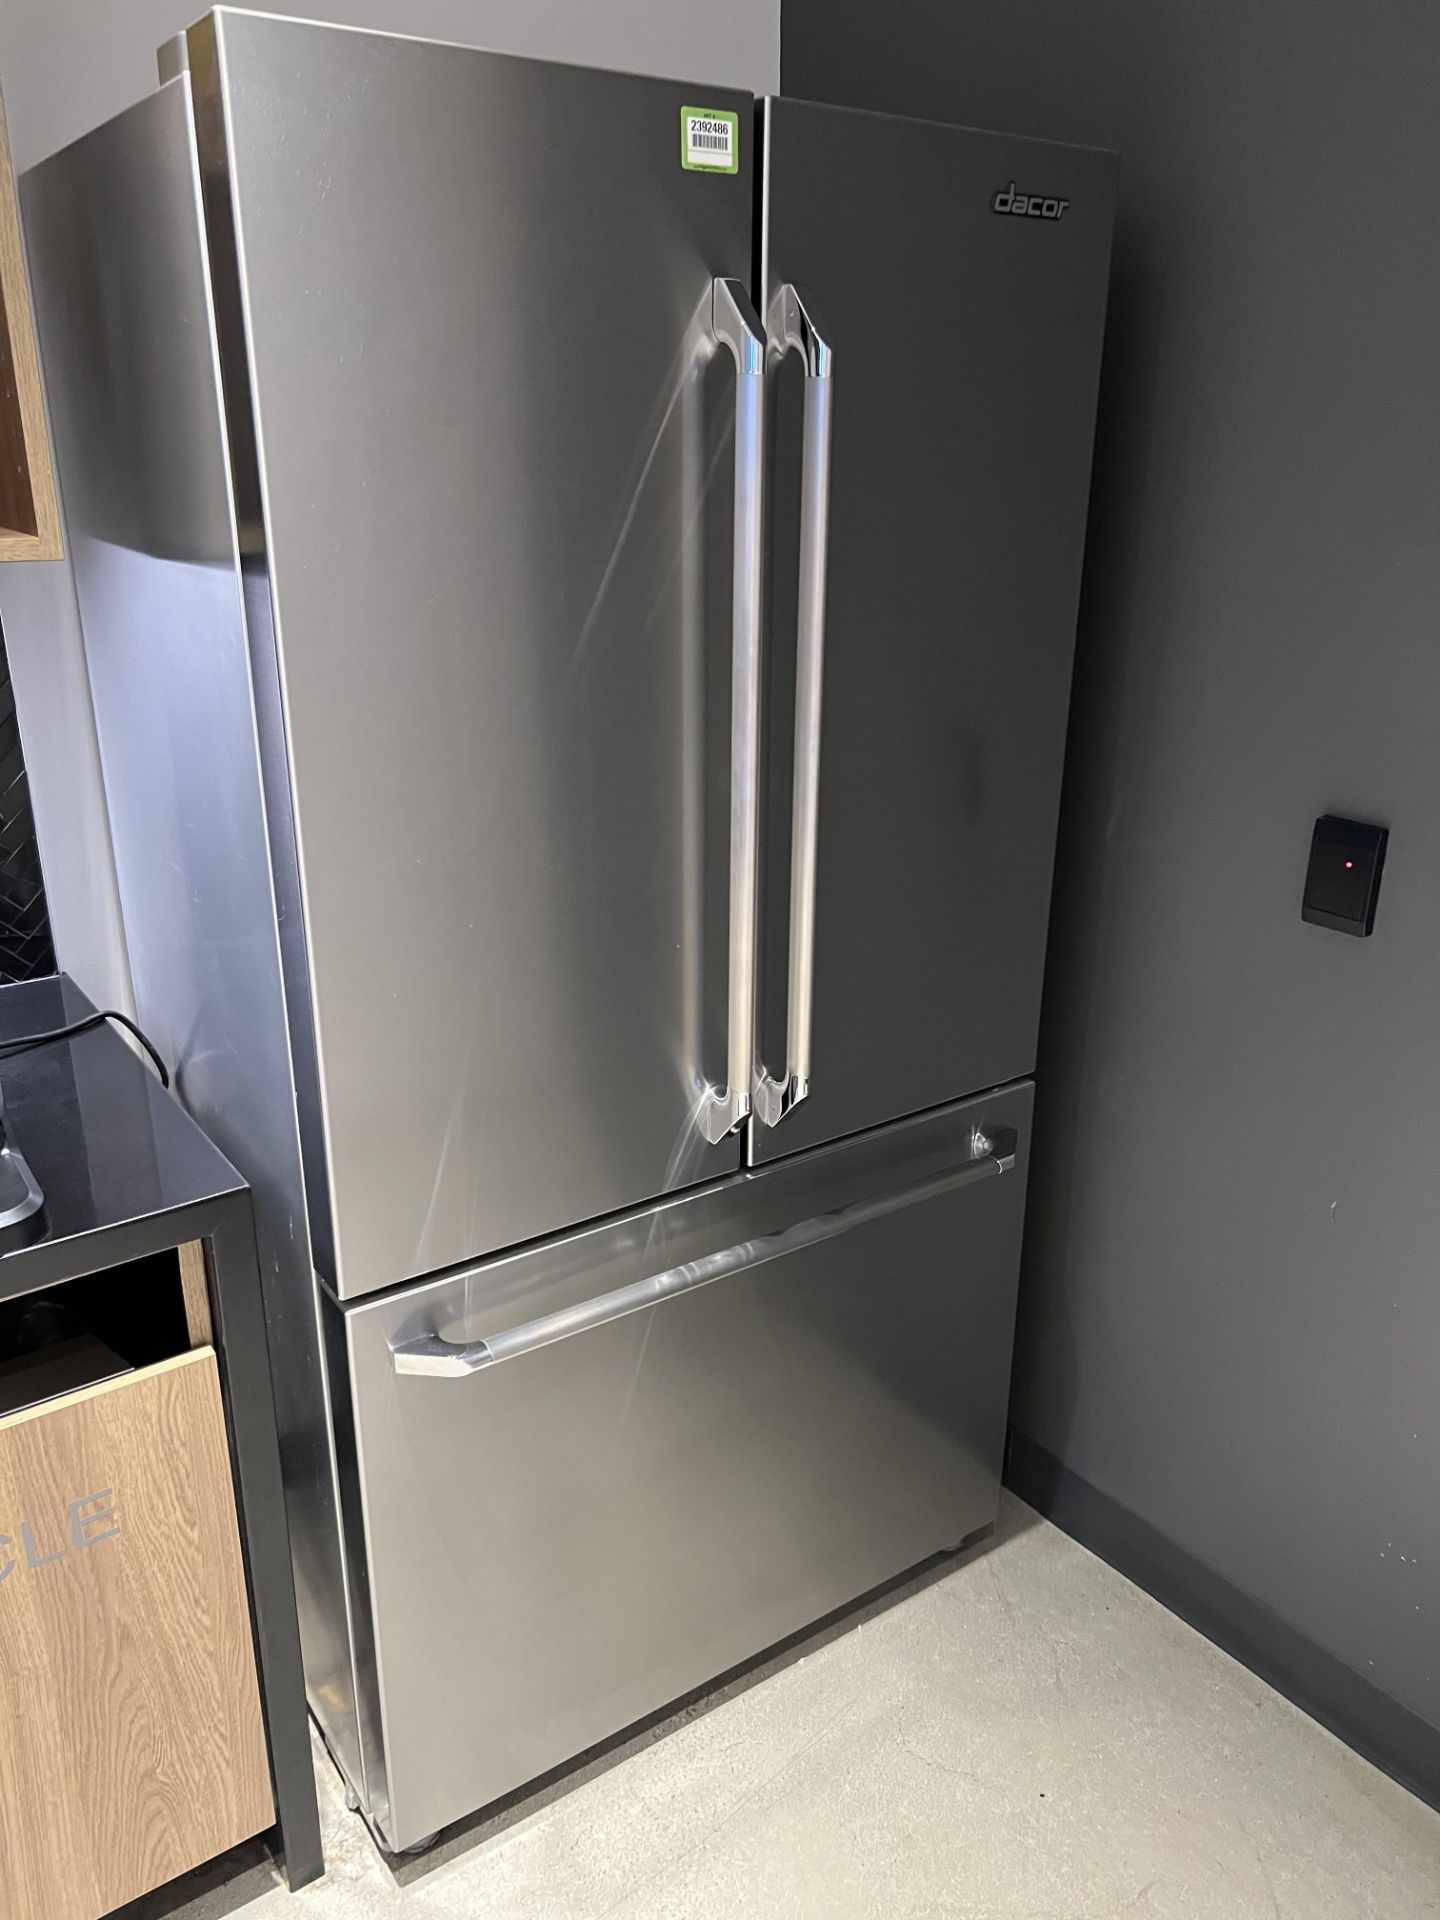 Dacor Refrigerator/Freezer